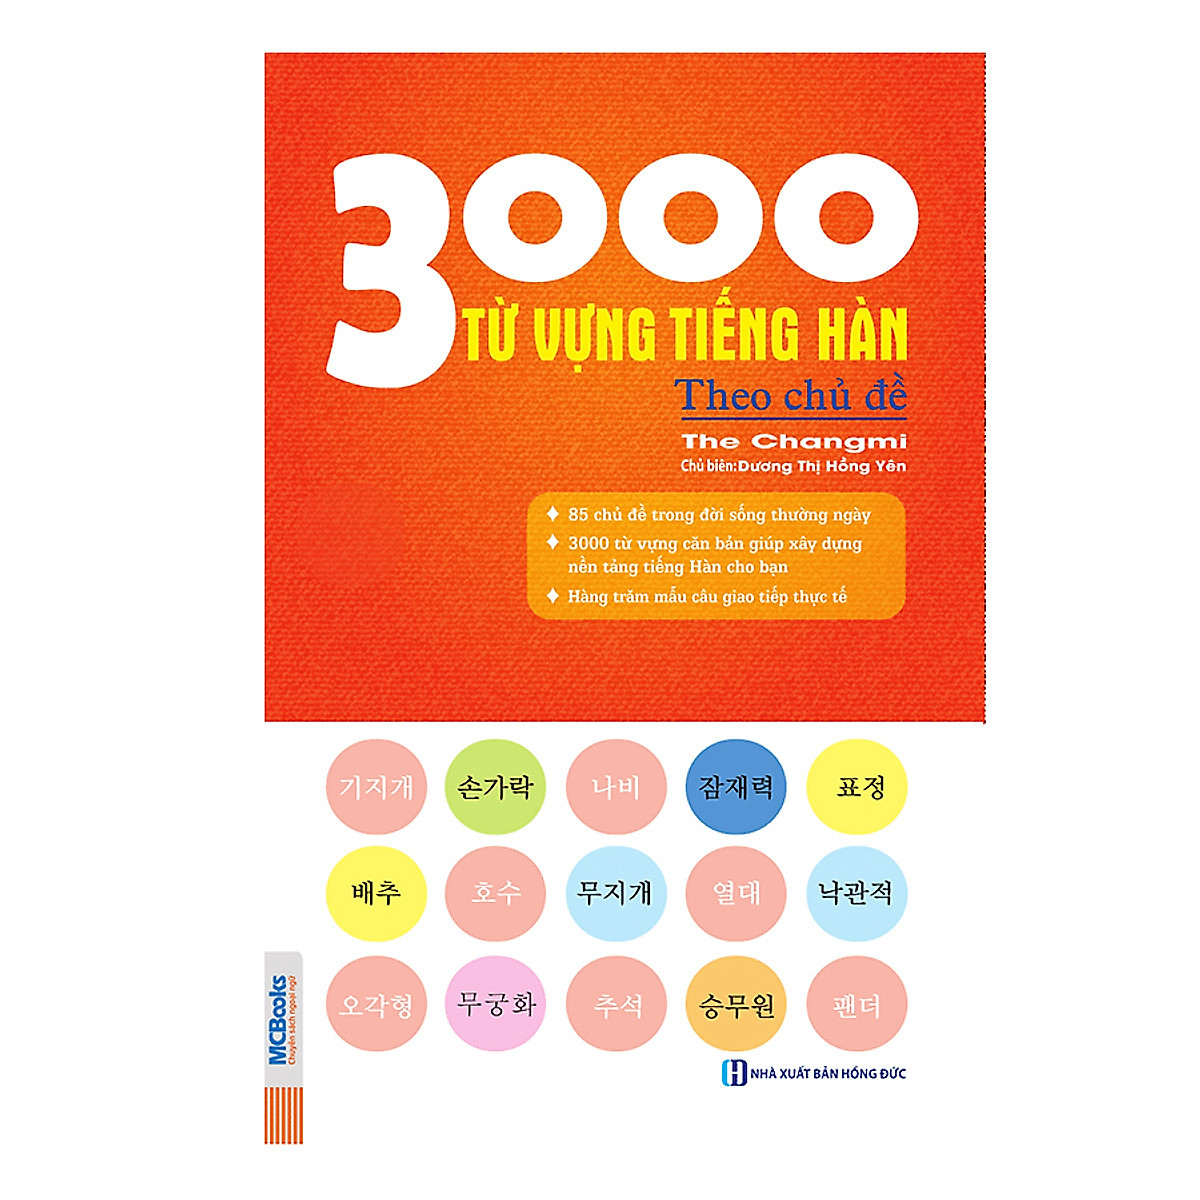 Bộ 2 Cuốn: Ngữ Pháp Tiếng Hàn Bỏ Túi - Giải Thích Chi Tiết + 3000 Từ Vựng Tiếng Hàn Theo Chủ Đề (Học Cùng App MCBooks) - MinhAnBooks